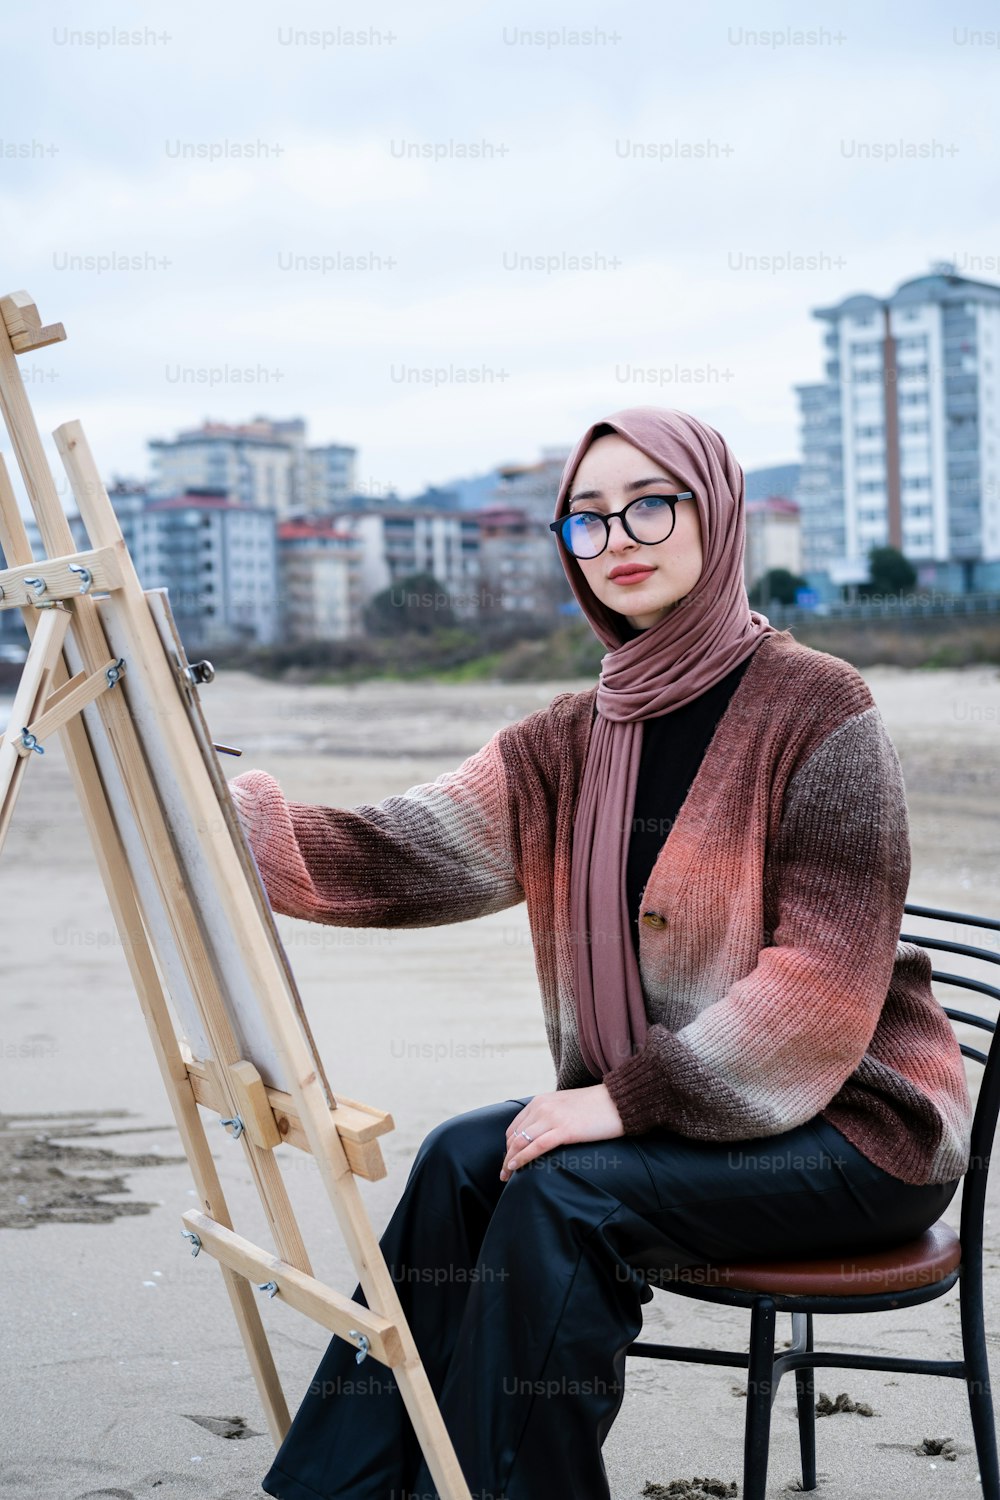 Una mujer con un hijab sentada en una silla con un caballete de pintura